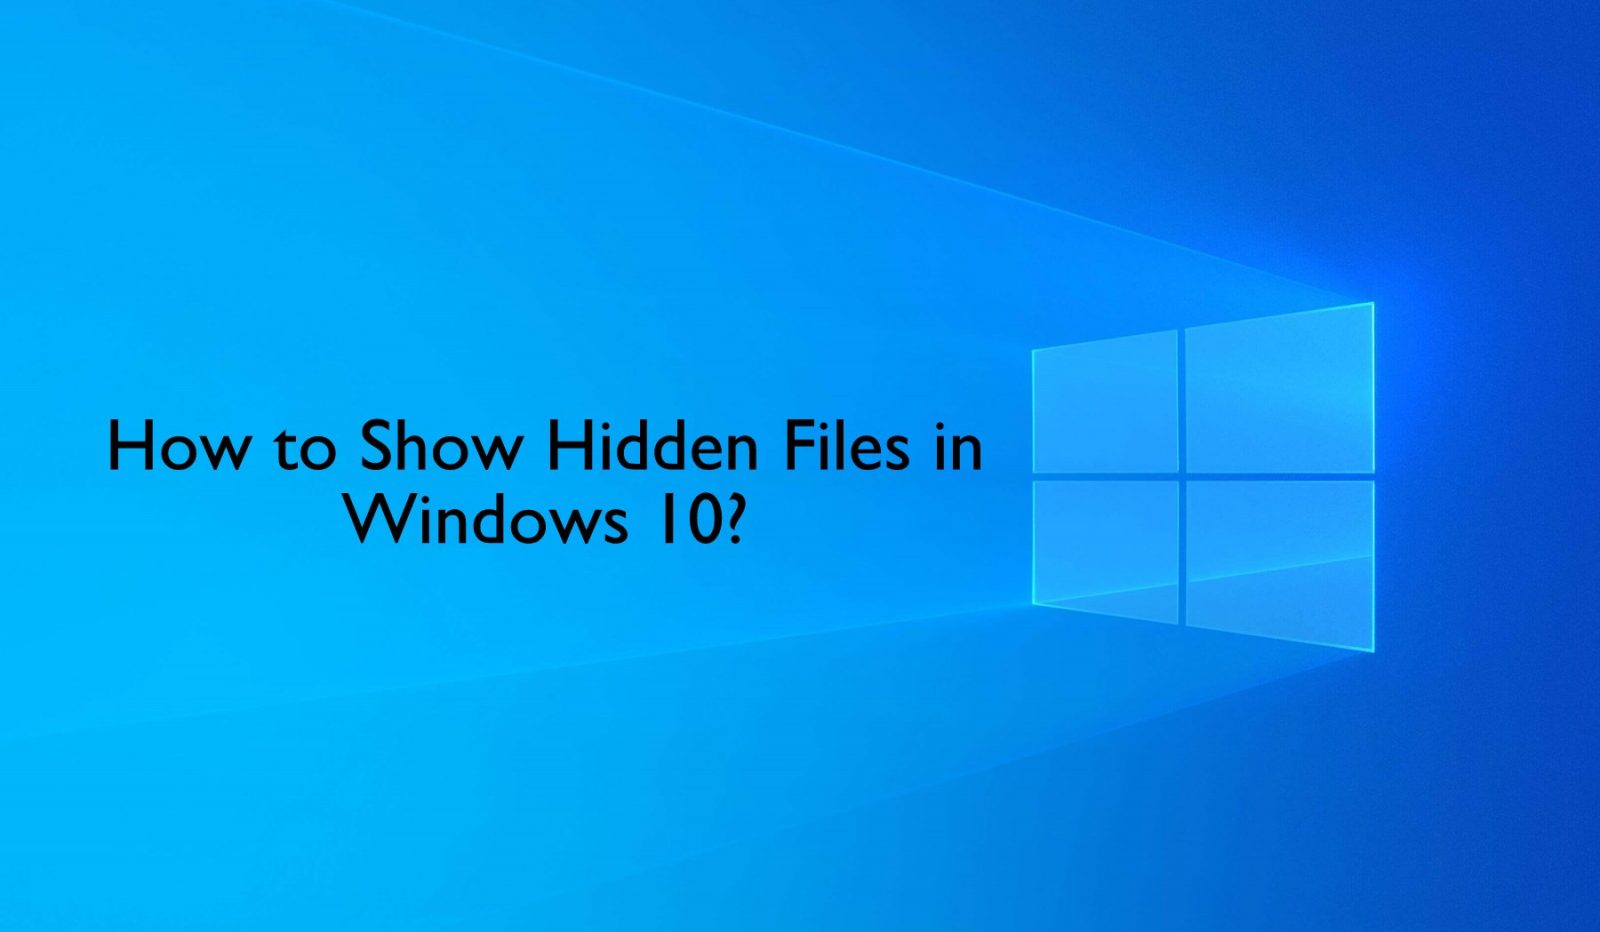 كيفية إظهار الملفات المخفية بتنسيق Windows 10 أجهزة كمبيوتر محمولة وأجهزة كمبيوتر سطح المكتب